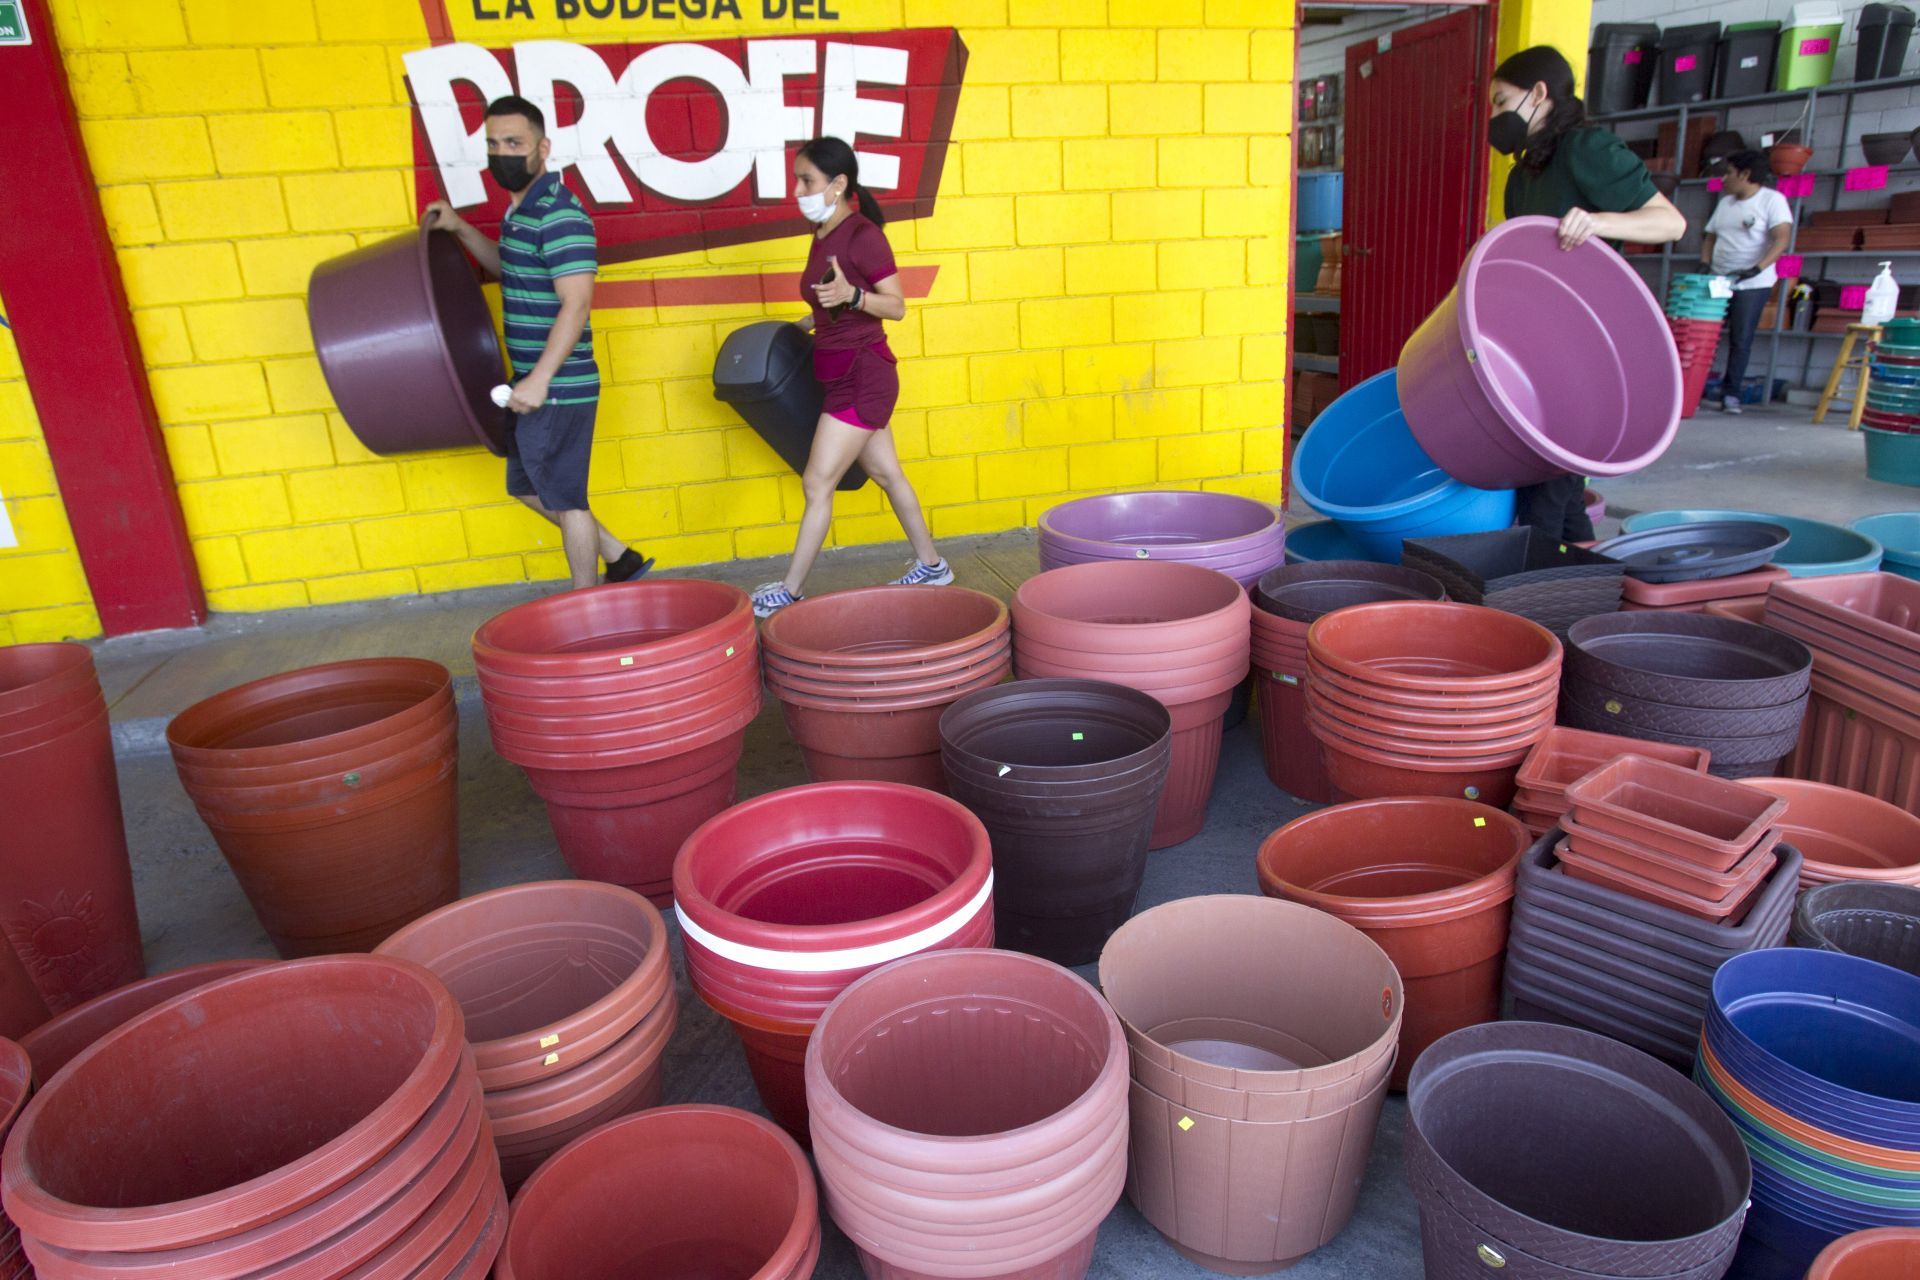 A hoA horas de realizar cortes al suministro de agua en Nuevo León, saturan tiendas para comprar tambos de almacenaje